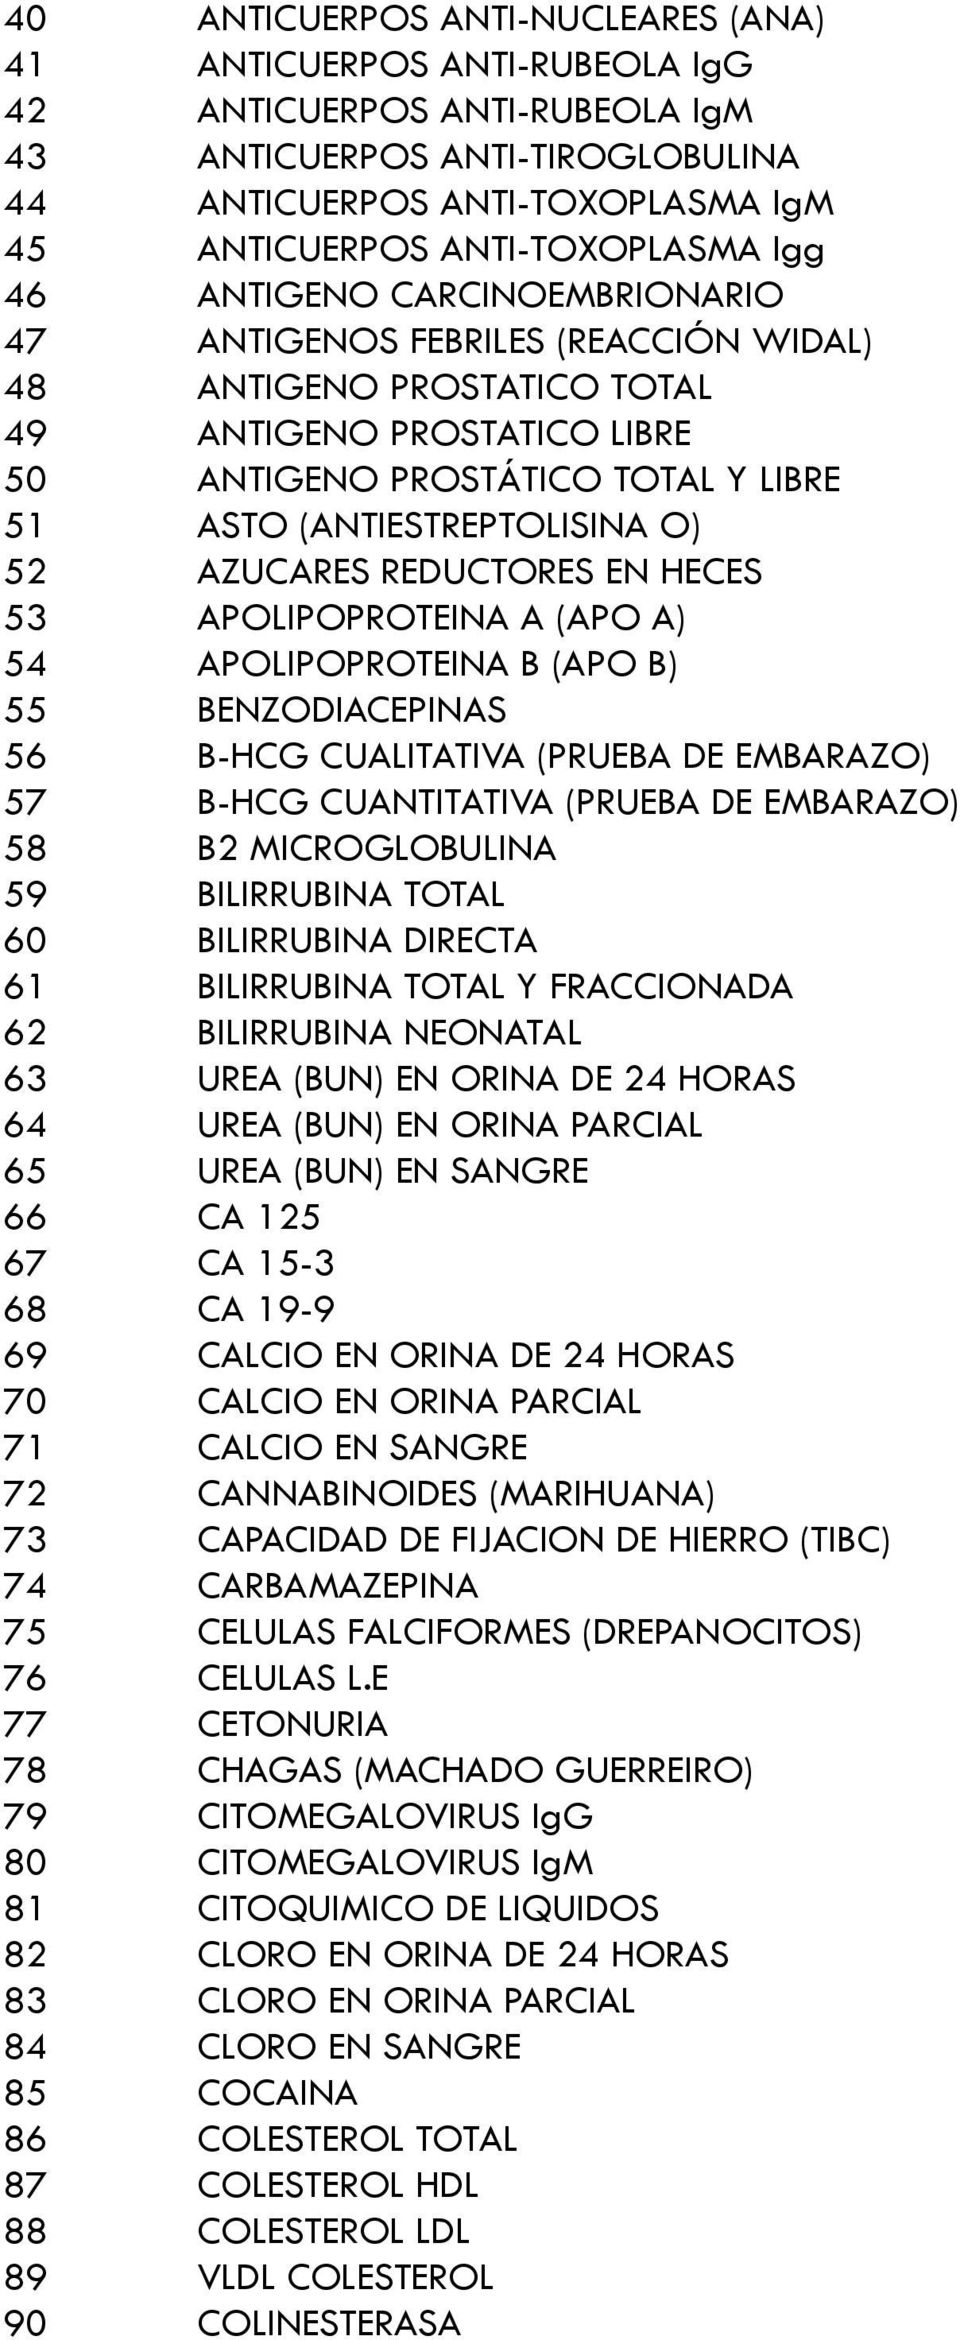 52 AZUCARES REDUCTORES EN HECES 53 APOLIPOPROTEINA A (APO A) 54 APOLIPOPROTEINA B (APO B) 55 BENZODIACEPINAS 56 B-HCG CUALITATIVA (PRUEBA DE EMBARAZO) 57 B-HCG CUANTITATIVA (PRUEBA DE EMBARAZO) 58 B2